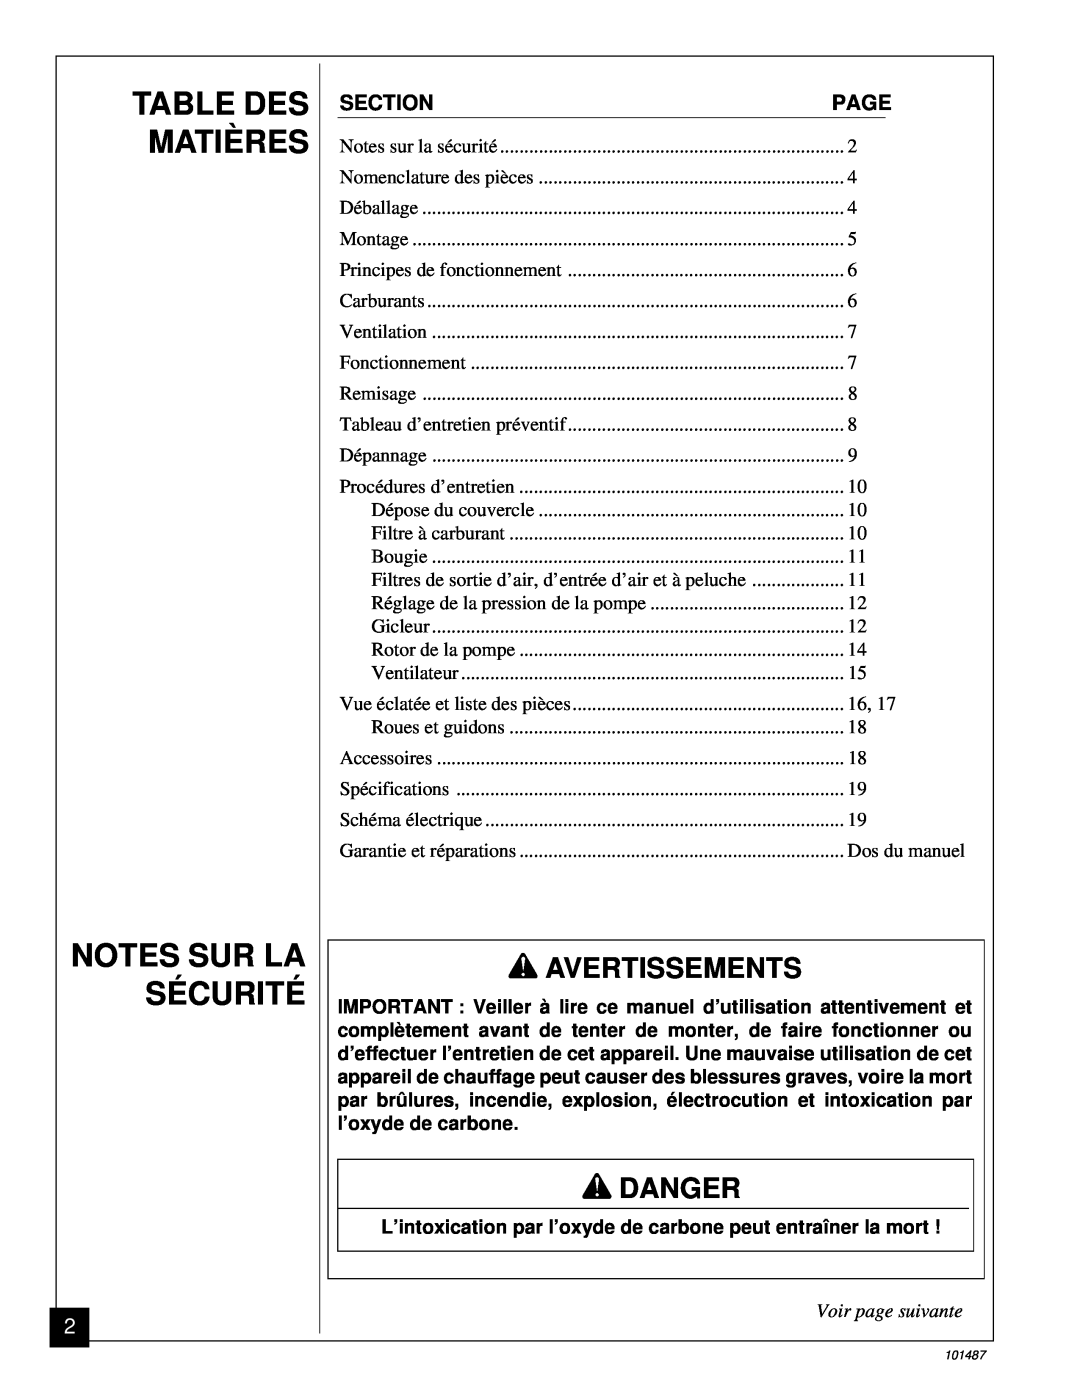 Master Lock BH150CE Table Des Matières Notes Sur La Sécurité, Avertissements, Voir page suivante, Danger, Section, Page 